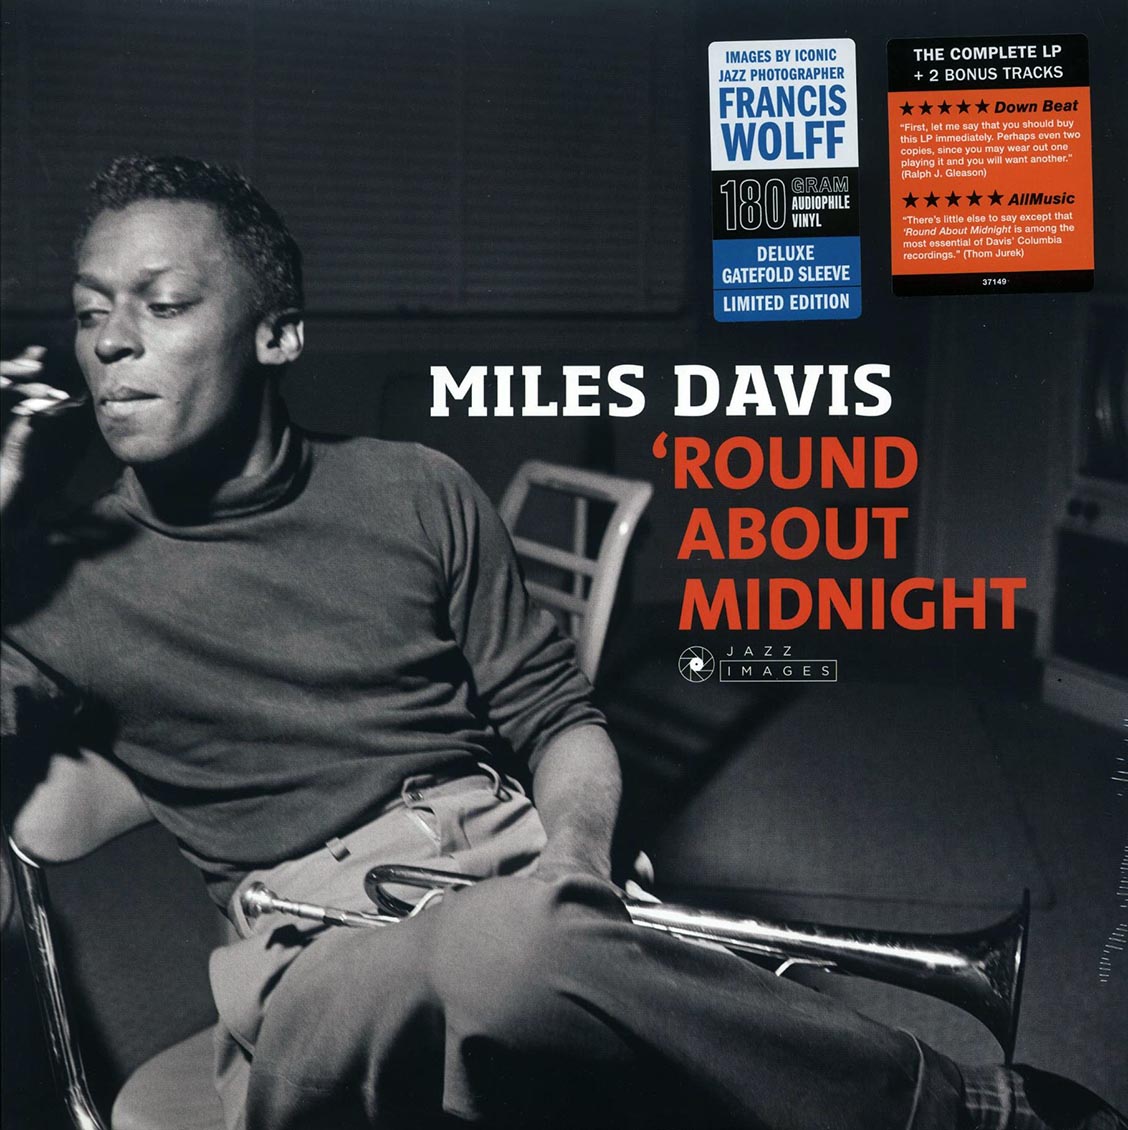 Davis, Miles "Round About Midnight" LP